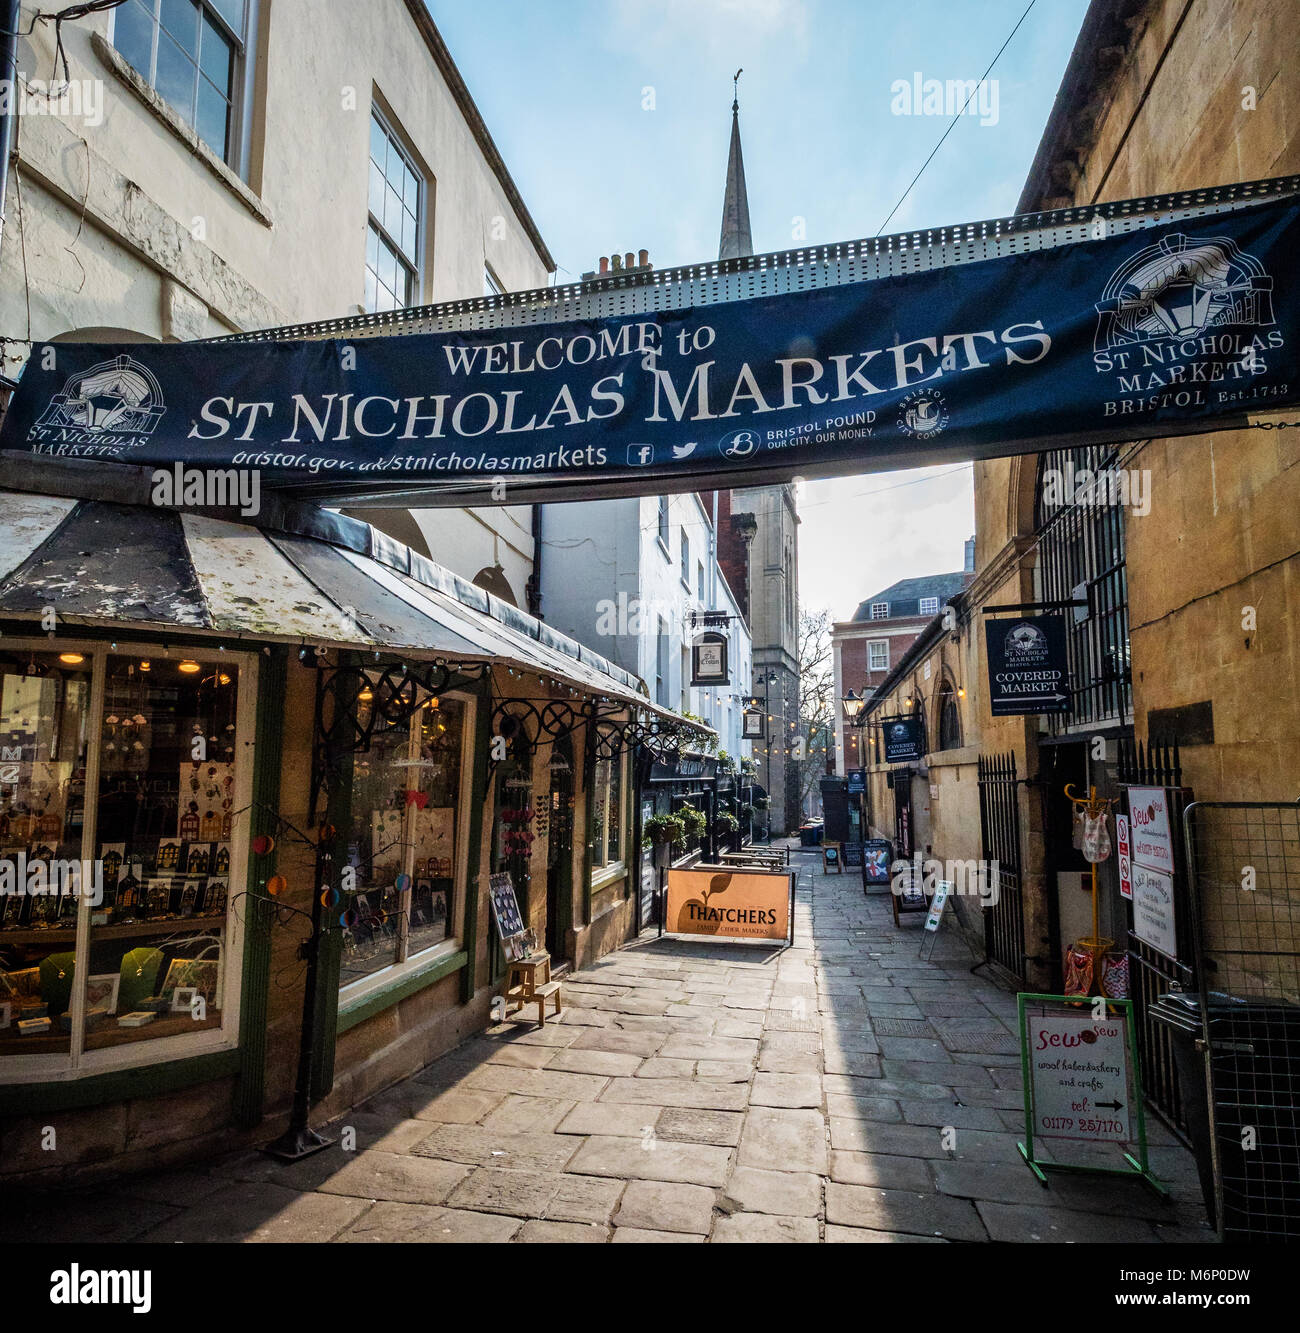 Am frühen Morgen in St. Nikolaus Markt in Bristol's Altstadt eine blühende Sortiment von kleinen unabhängigen Händlern Cafes, Restaurants und Imbissstände Stockfoto